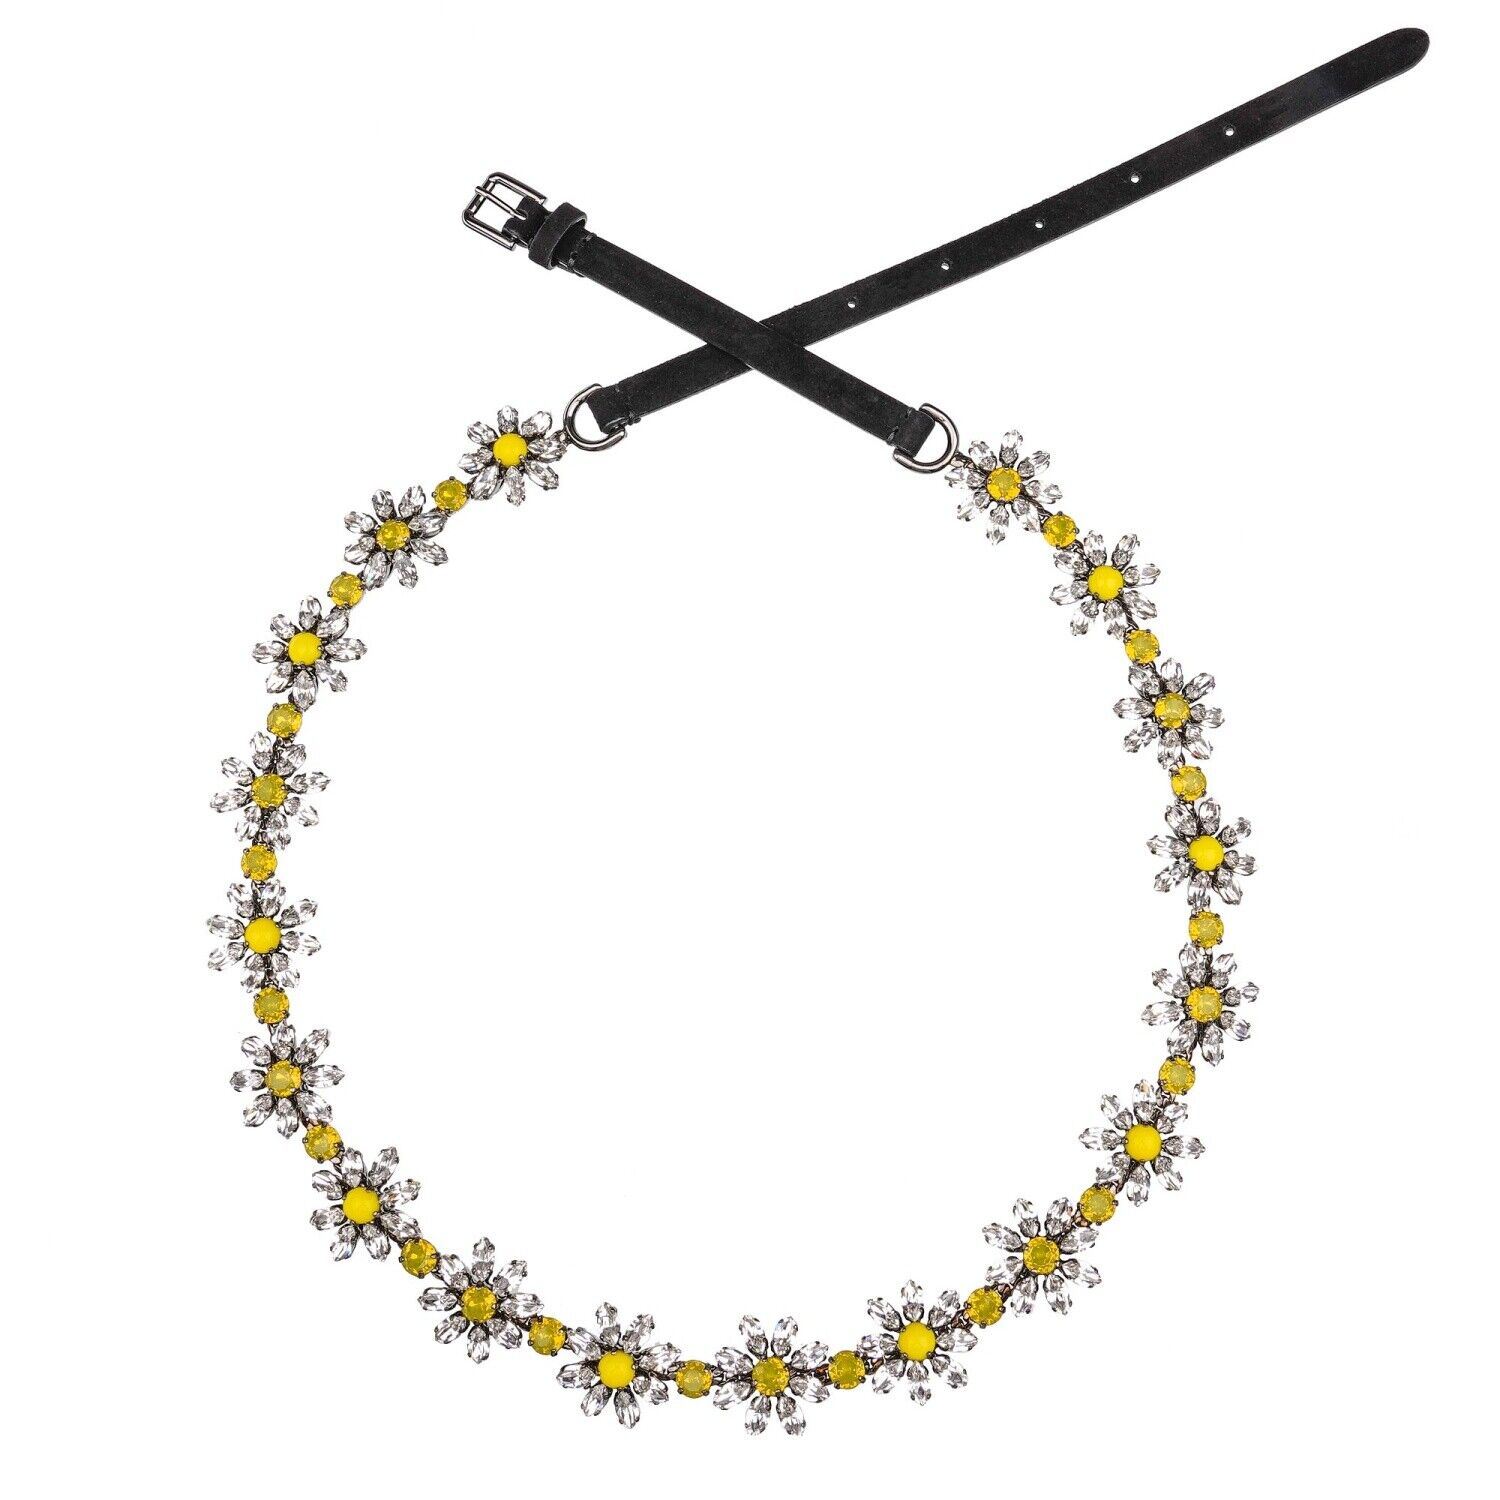 Ремень Dolce & Gabbana Crystals Marguerite Flower Chain Silver Black 09307